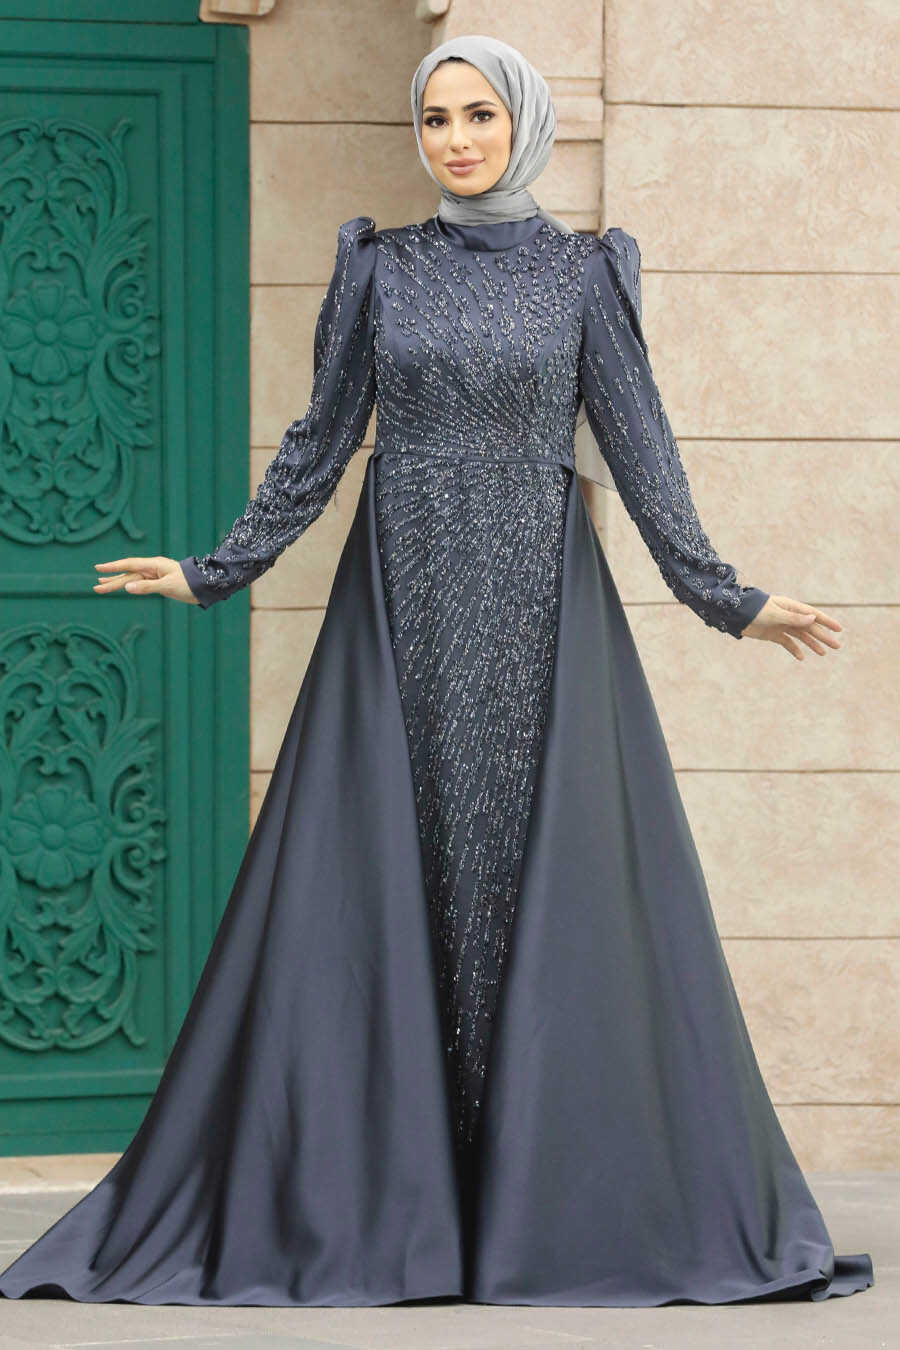 Neva Style - Modern Antrasit Modest Islamic Clothing Wedding Dress 23310ANT